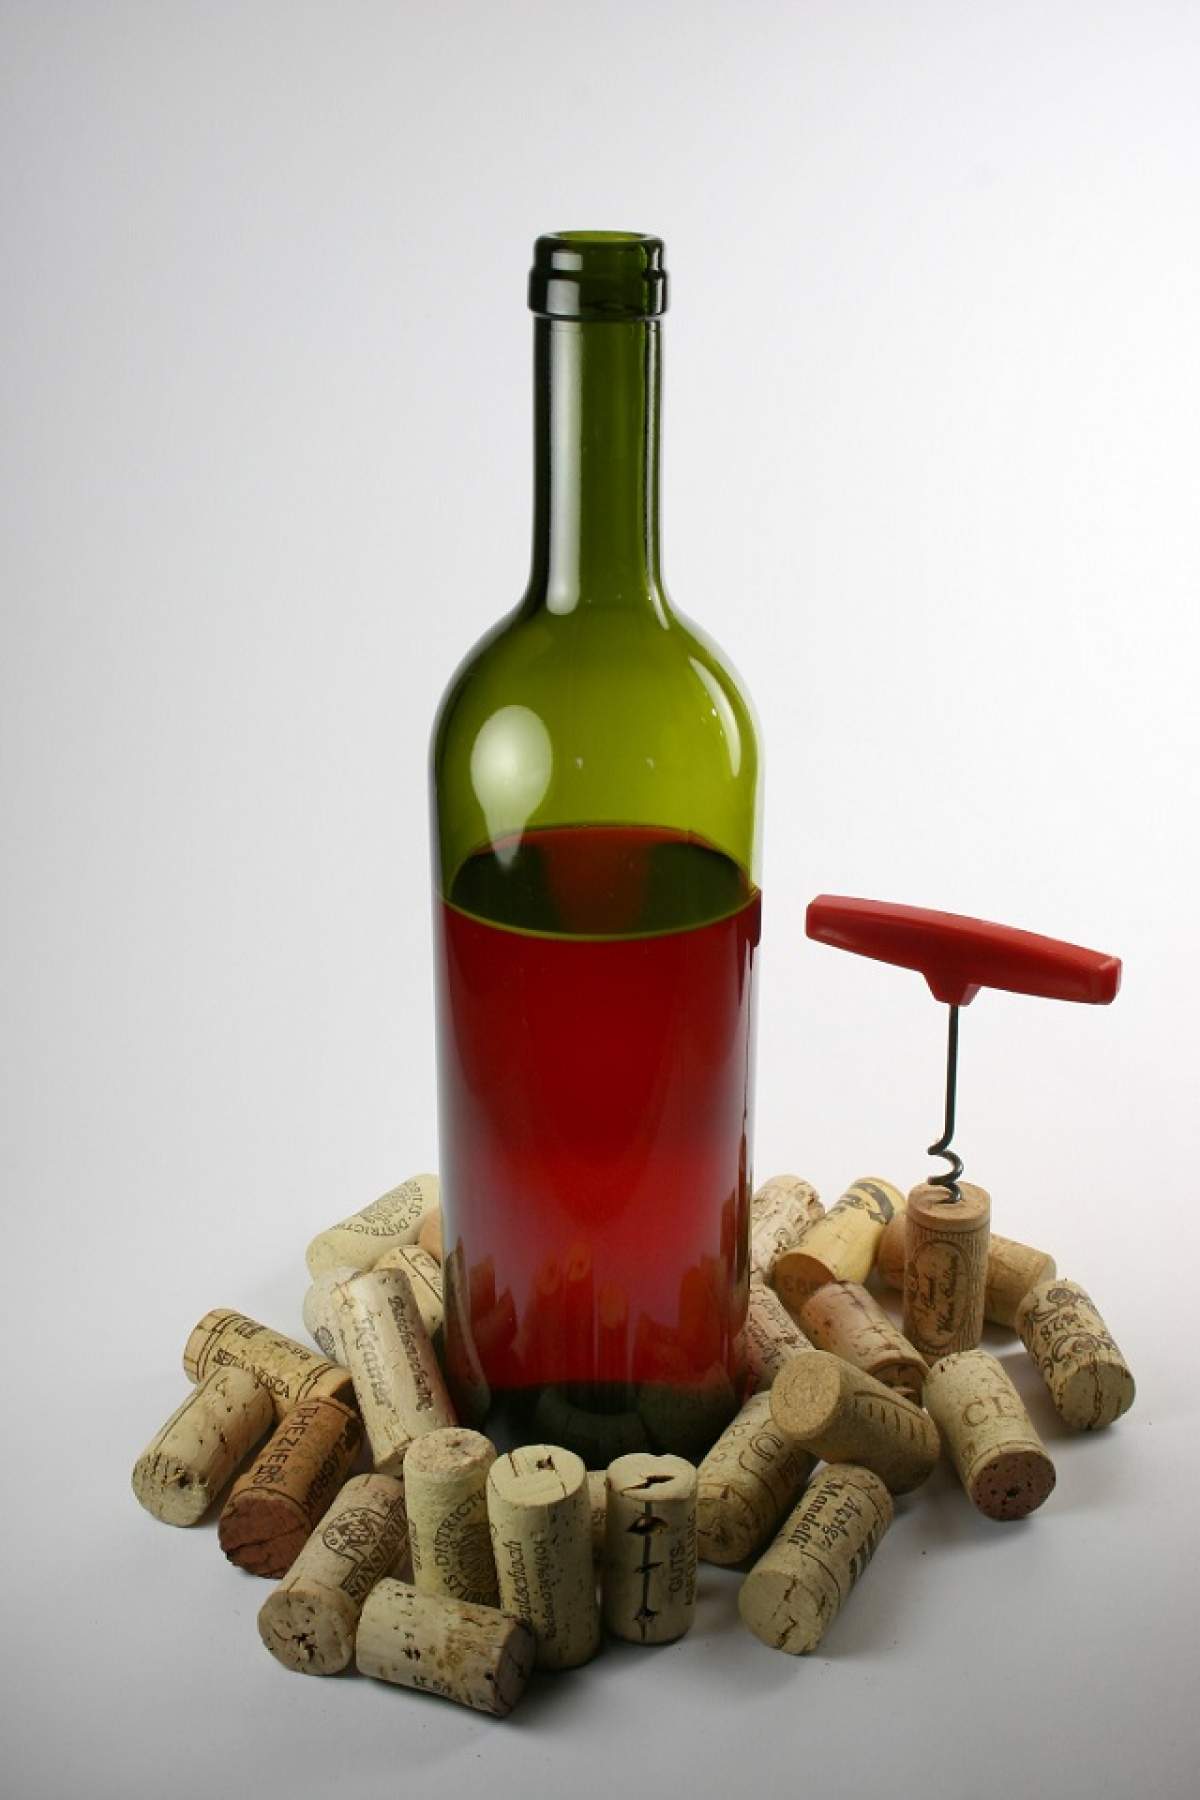 ÎNTREBAREA ZILEI - MARŢI: De câţi struguri e nevoie pentru a face o sticlă de vin?